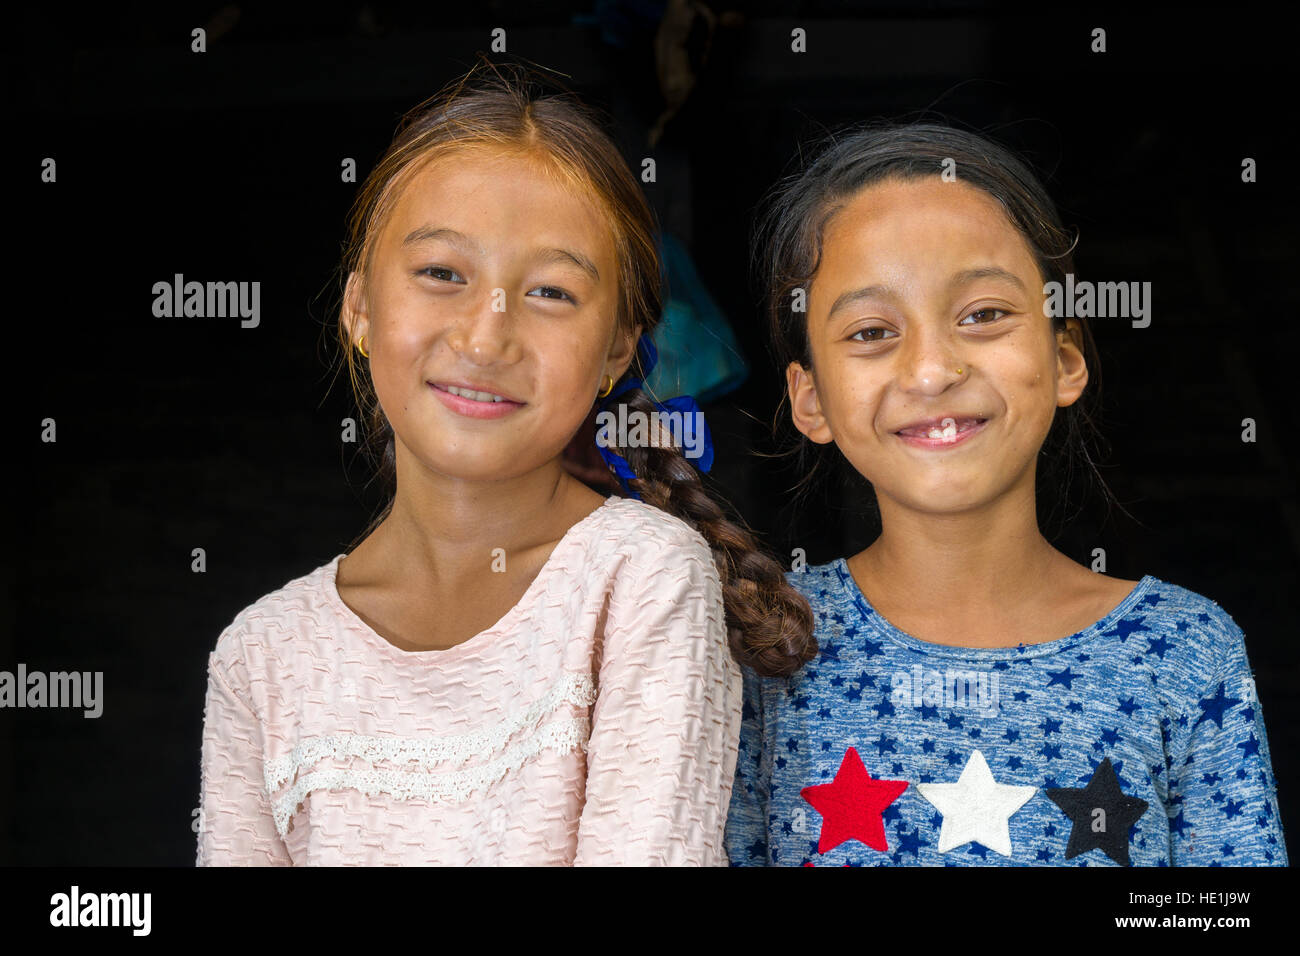 Ritratti di due ragazze sorridenti in alta valle marsyangdi Foto Stock